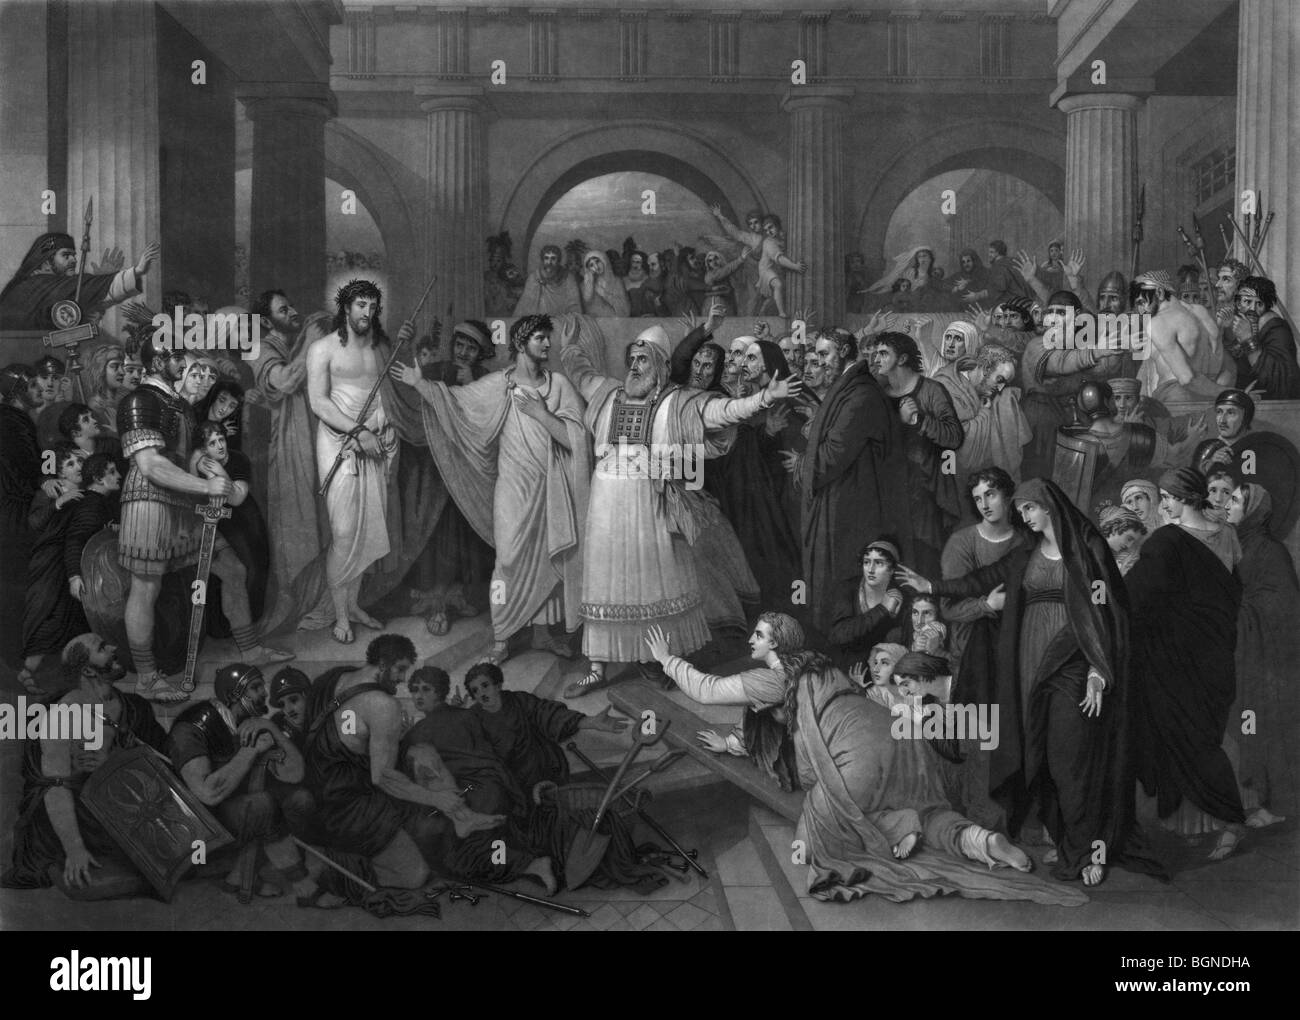 Print c1870 intitulée "Le Christ Rejeté' et illustrant Jésus est rejetée par les Juifs lorsqu'ils sont amenés devant Ponce Pilate. Banque D'Images